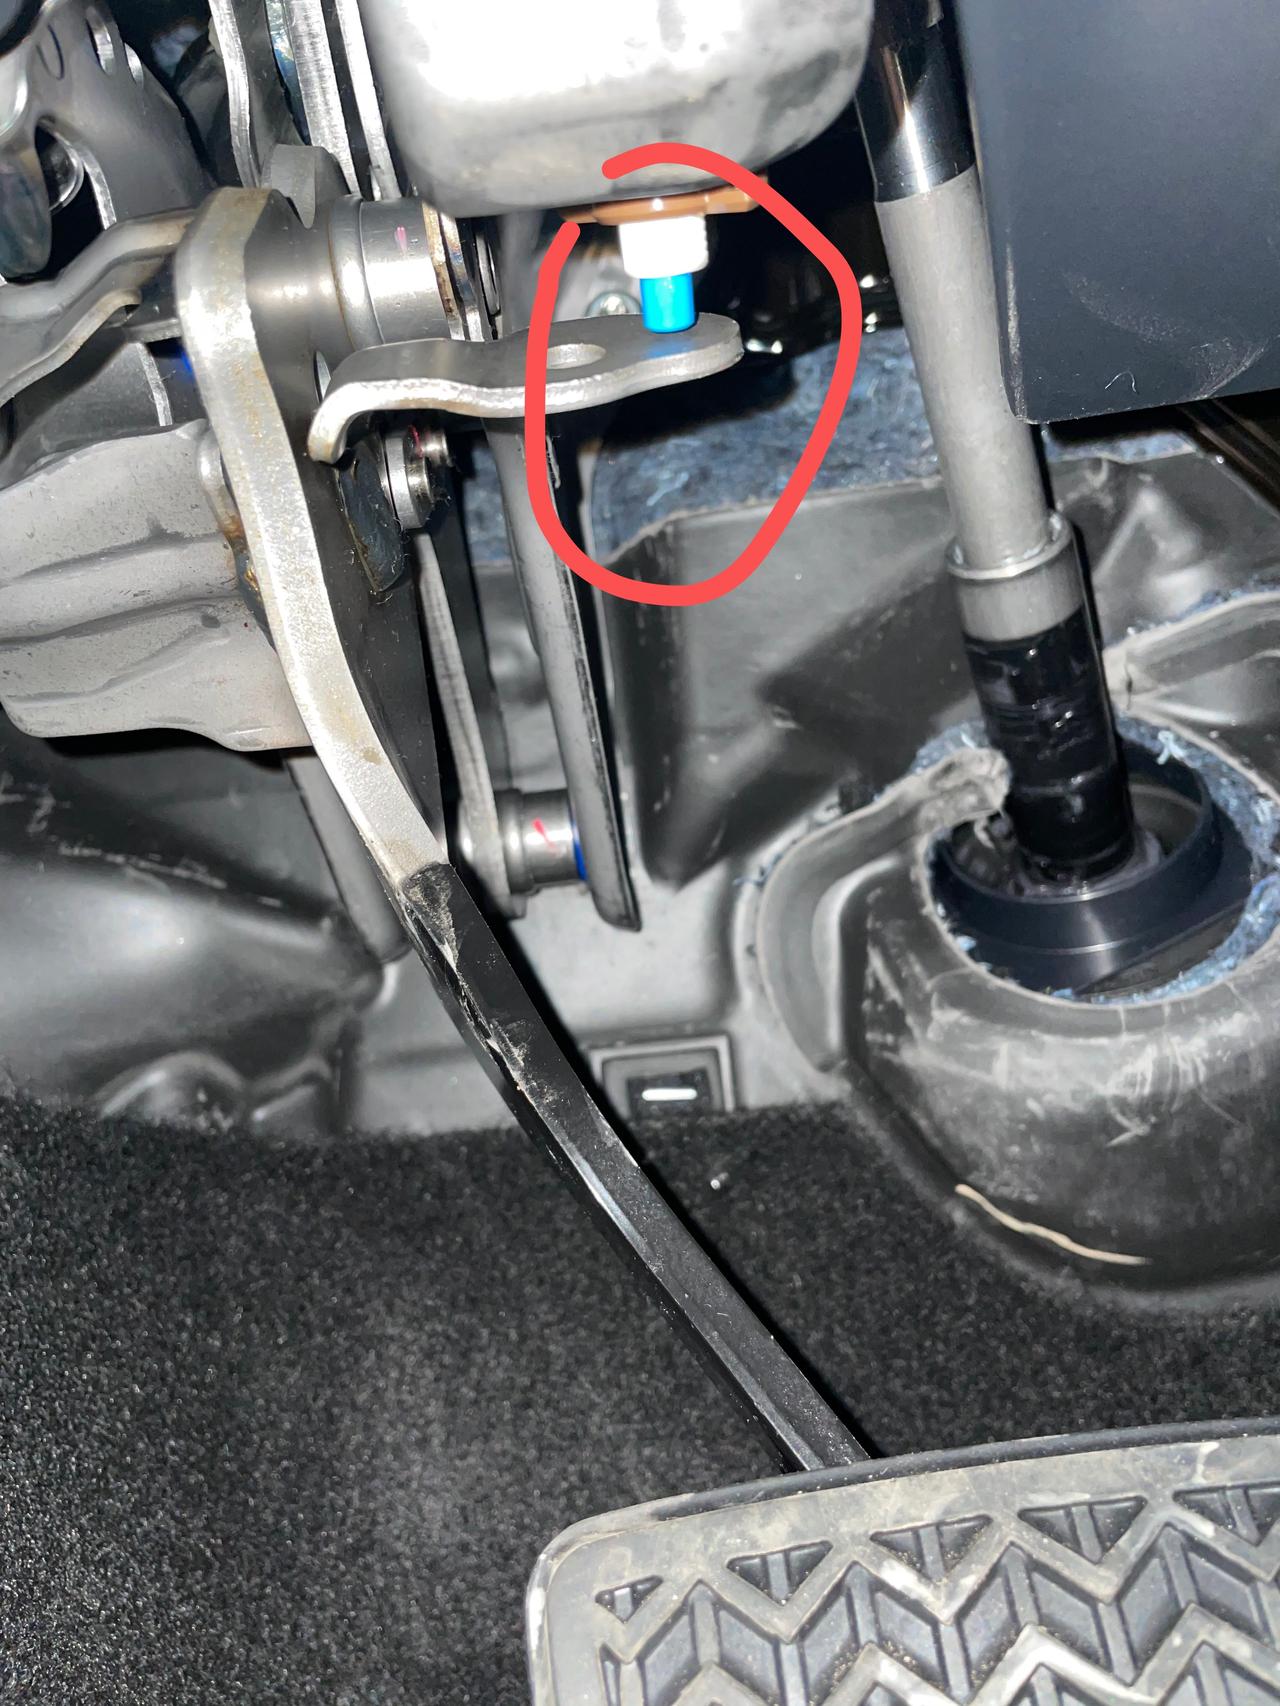 威兰达双擎 刹车有滴滴的电子元器件的声音 很烦 应该是这个电子元器件的声音 可否消除